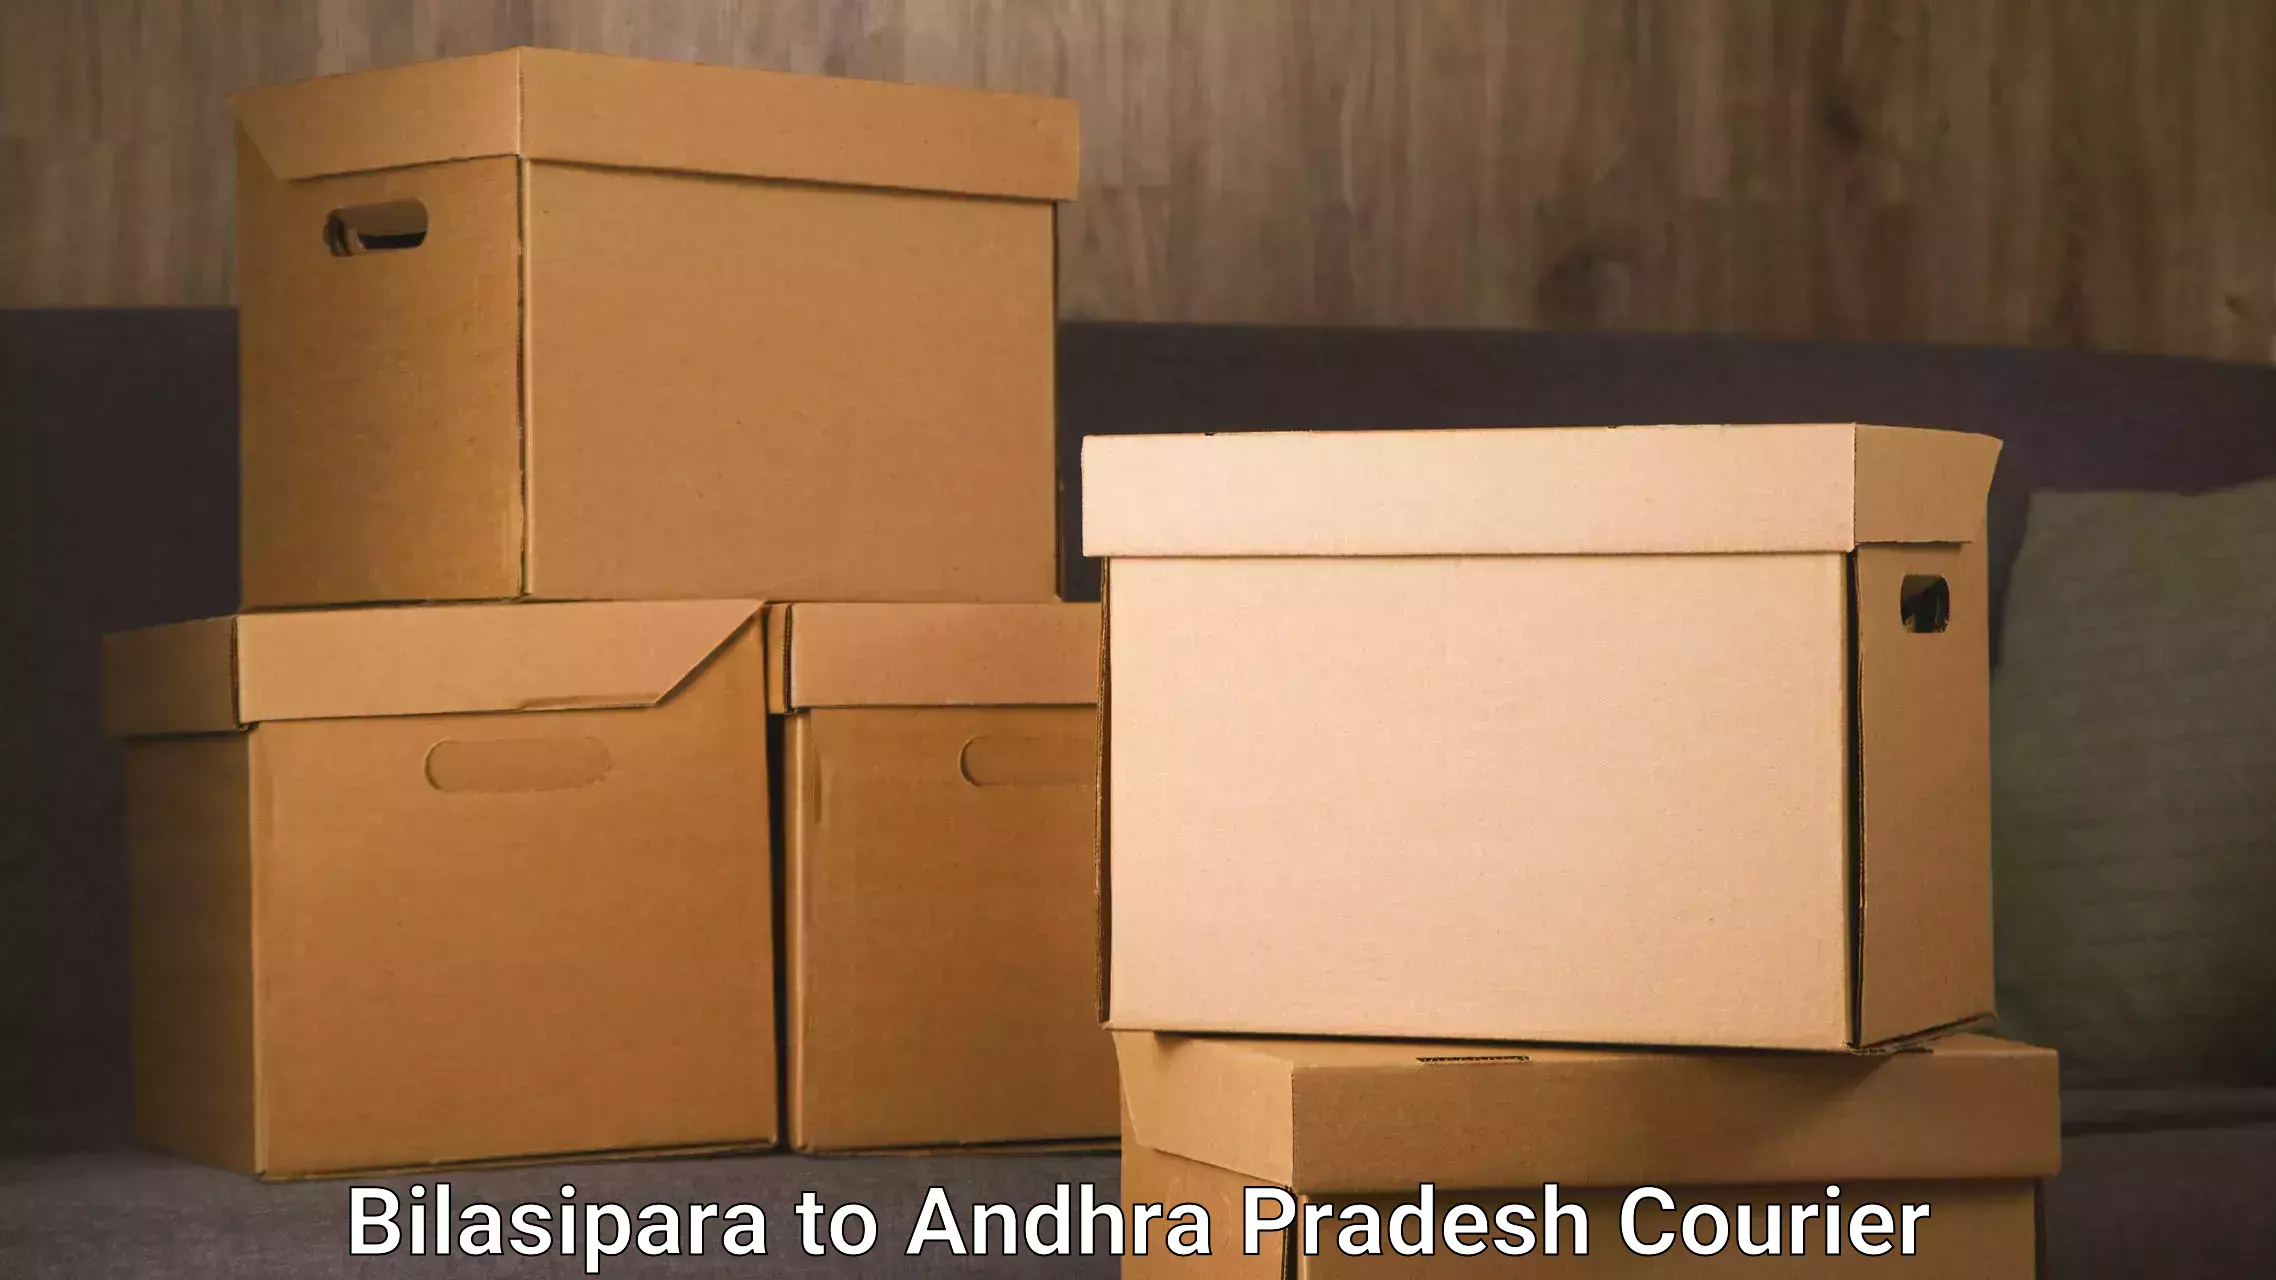 Express logistics providers in Bilasipara to Sarvepalli Nellore